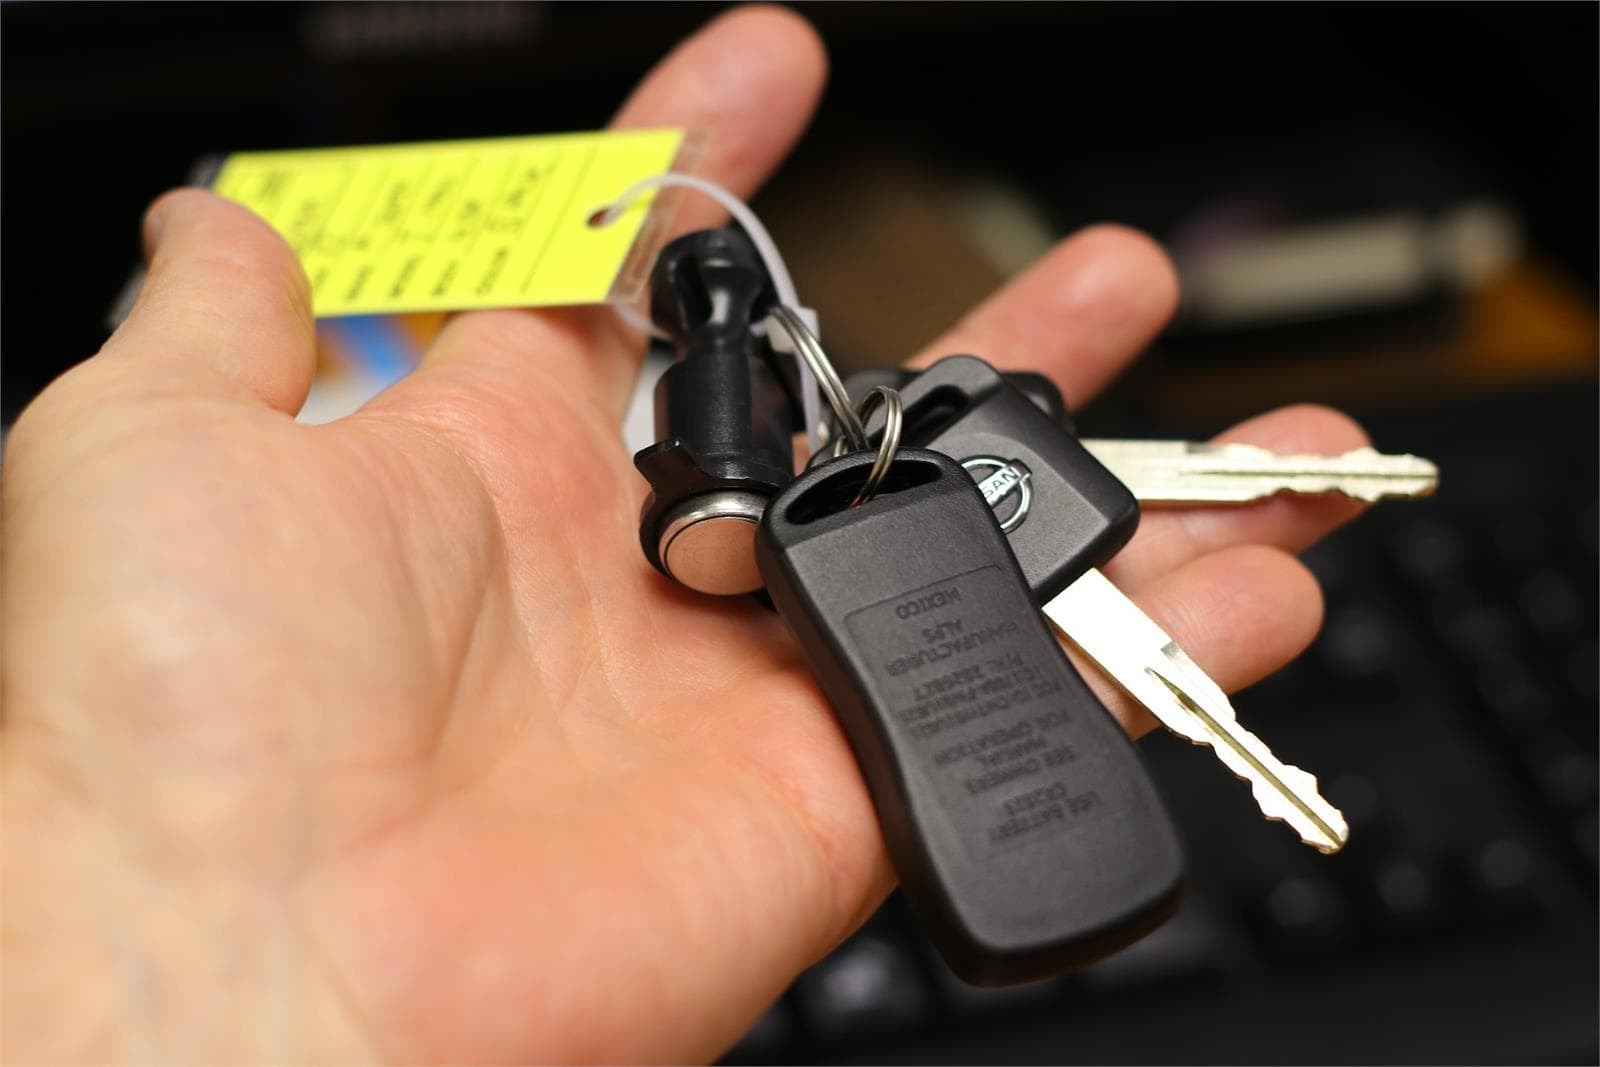 Cambios de carcasa de llaves de coche: por qué no debes arriesgarte a cambiarlas tú mismo - Imagen 1